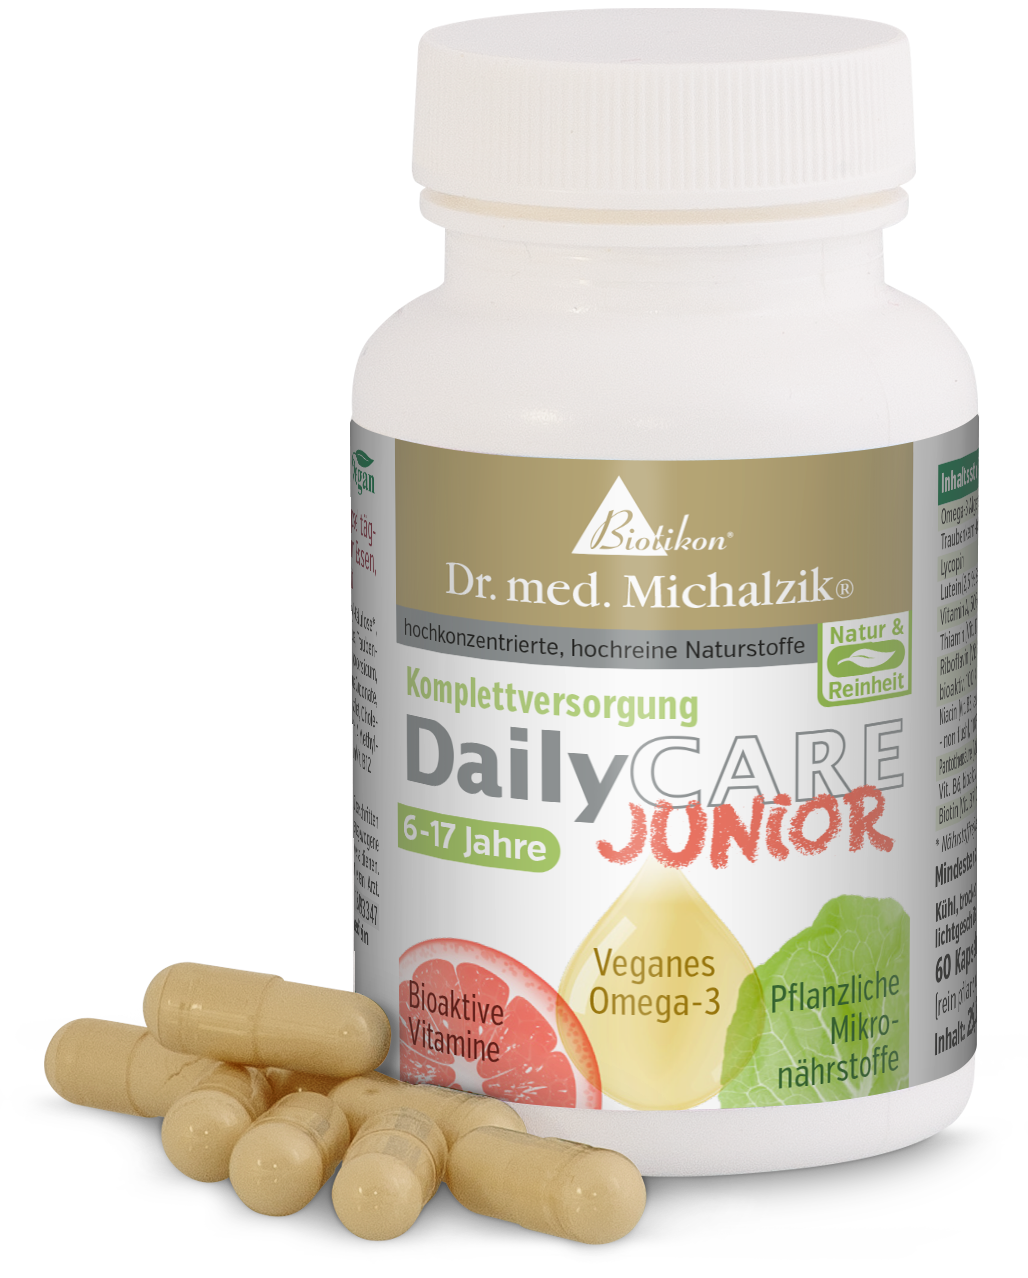 DailyCare Junior - Vitamine bioattive, omega-3 vegani + oligoelementi e sostanze vegetali di alta qualità